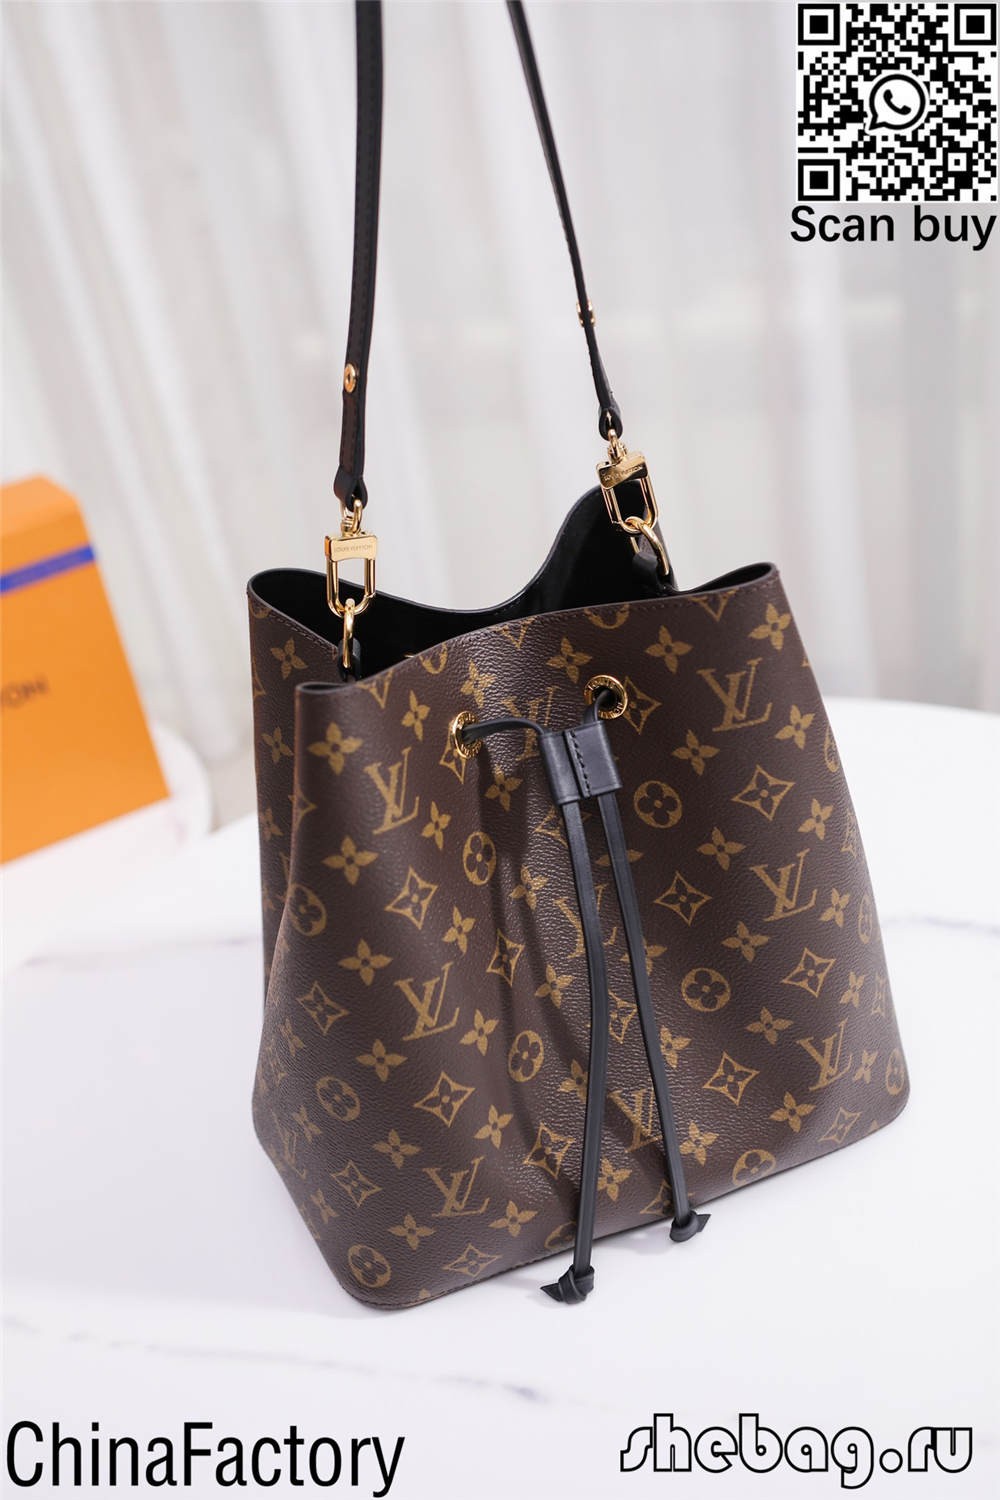 블랙 루이 비통 가방 레플리카 판매 웹사이트(2022 최신)-Best Quality Fake Louis Vuitton Bag Online Store, Replica Designer bag ru